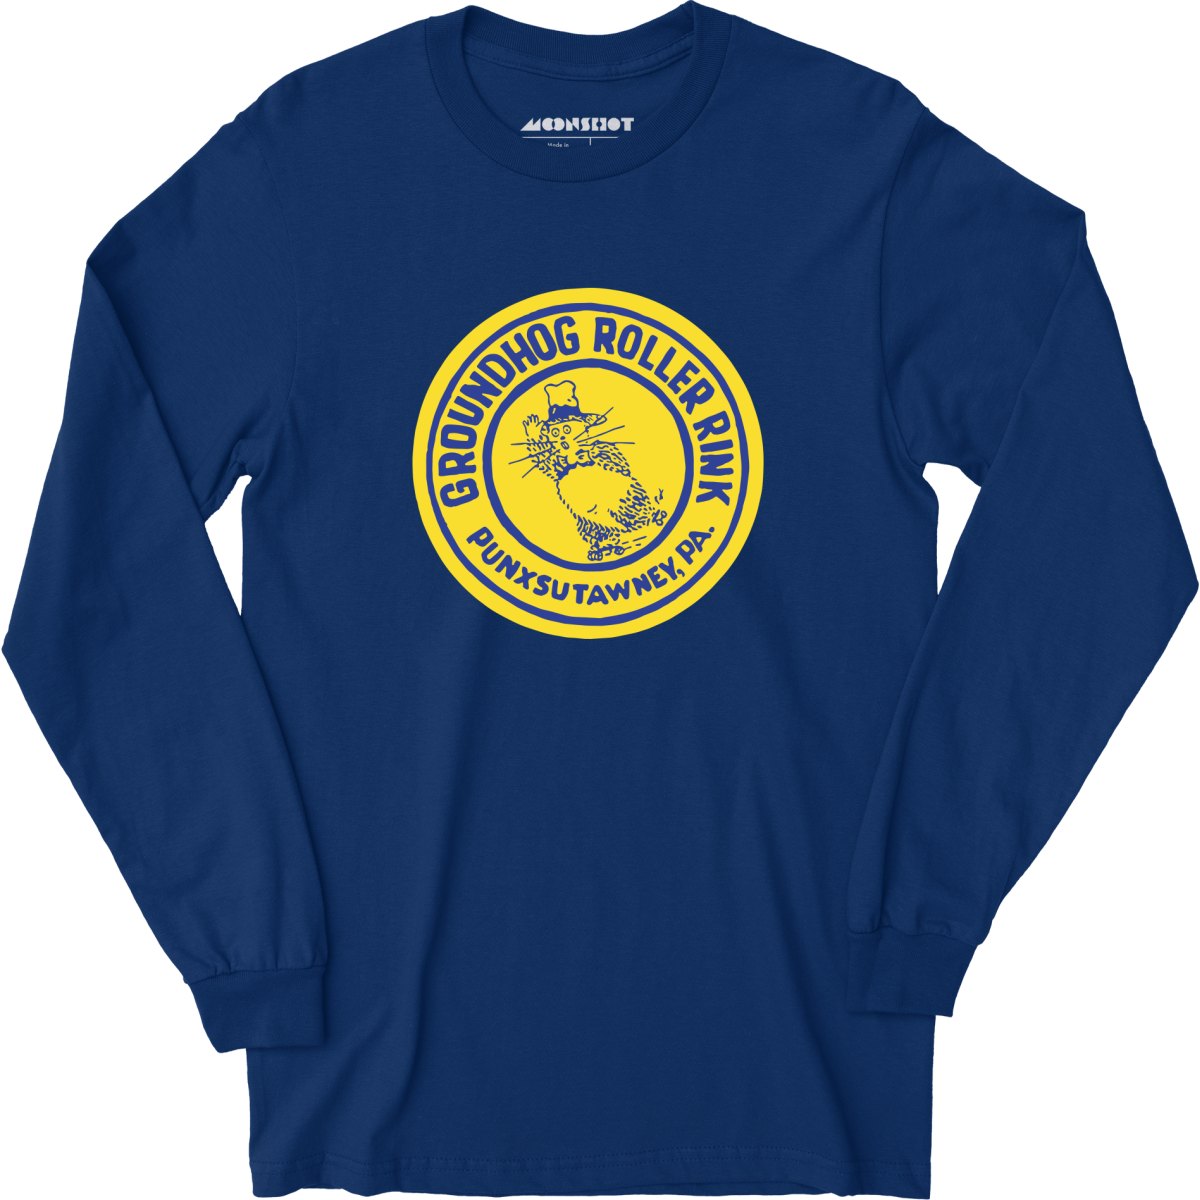 Groundhog Roller Rink - Punxsutawney, PA - Vintage Roller Rink - Long Sleeve T-Shirt